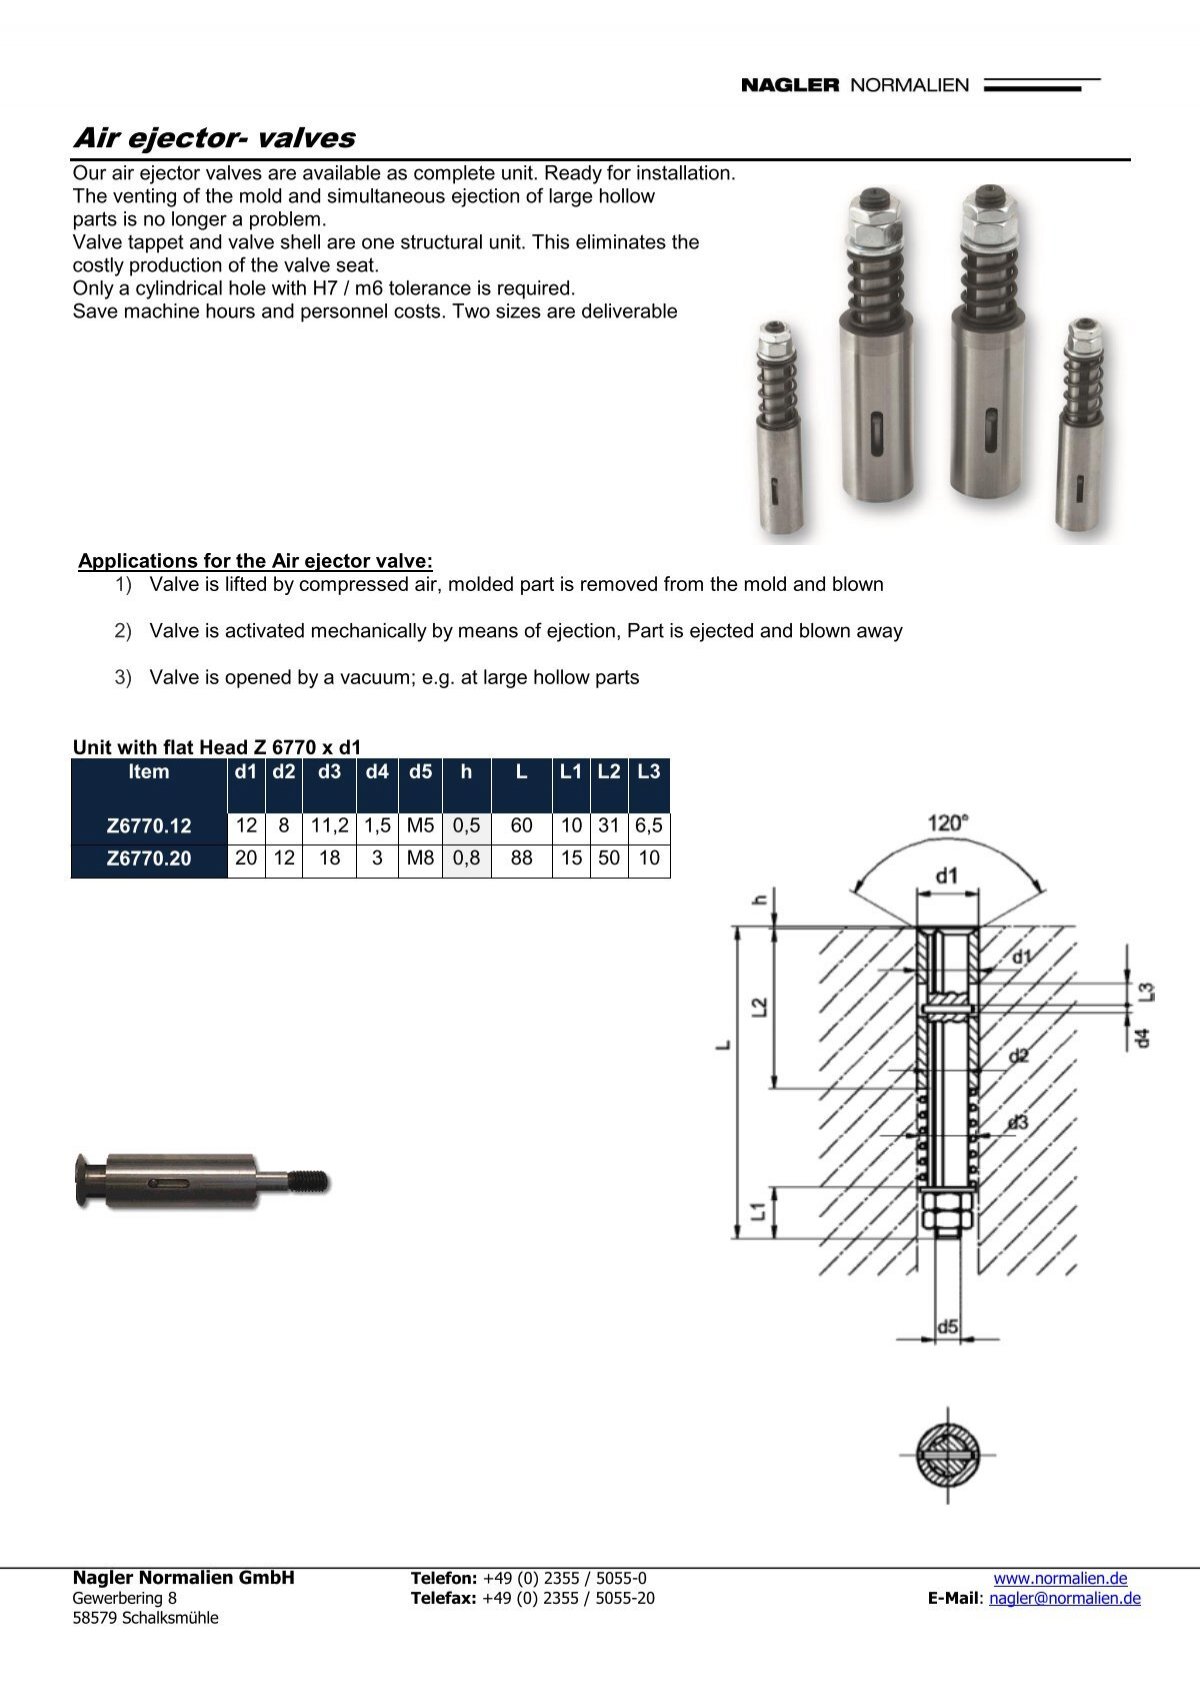 Download Air ejector valves - Nagler Normalien GmbH